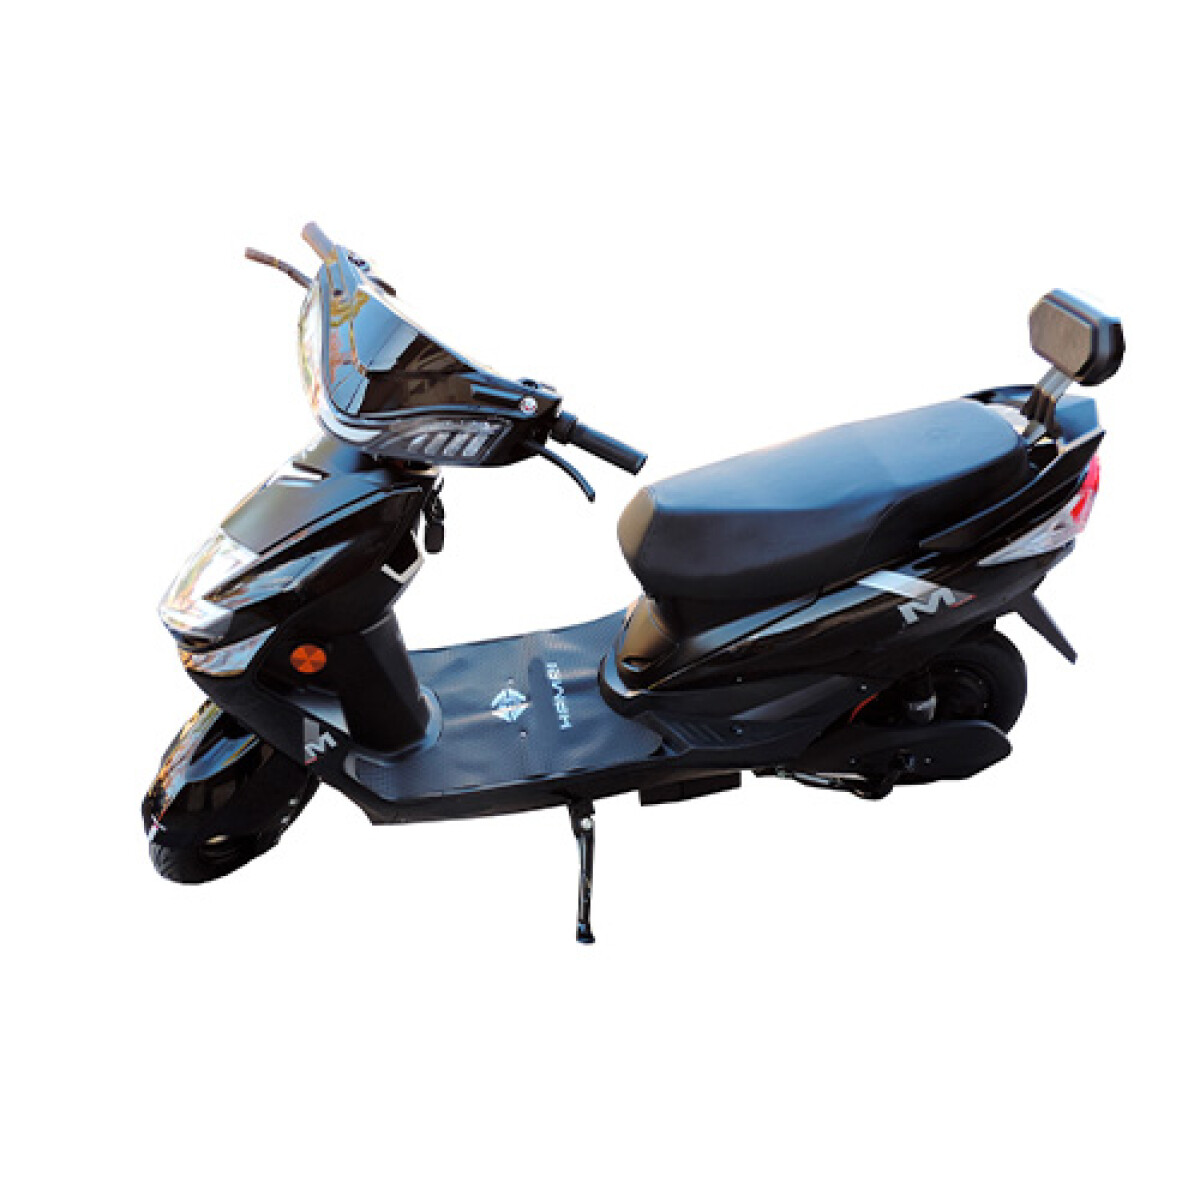 Moto Scooter Eléctrico 800W K-hemei - 001 